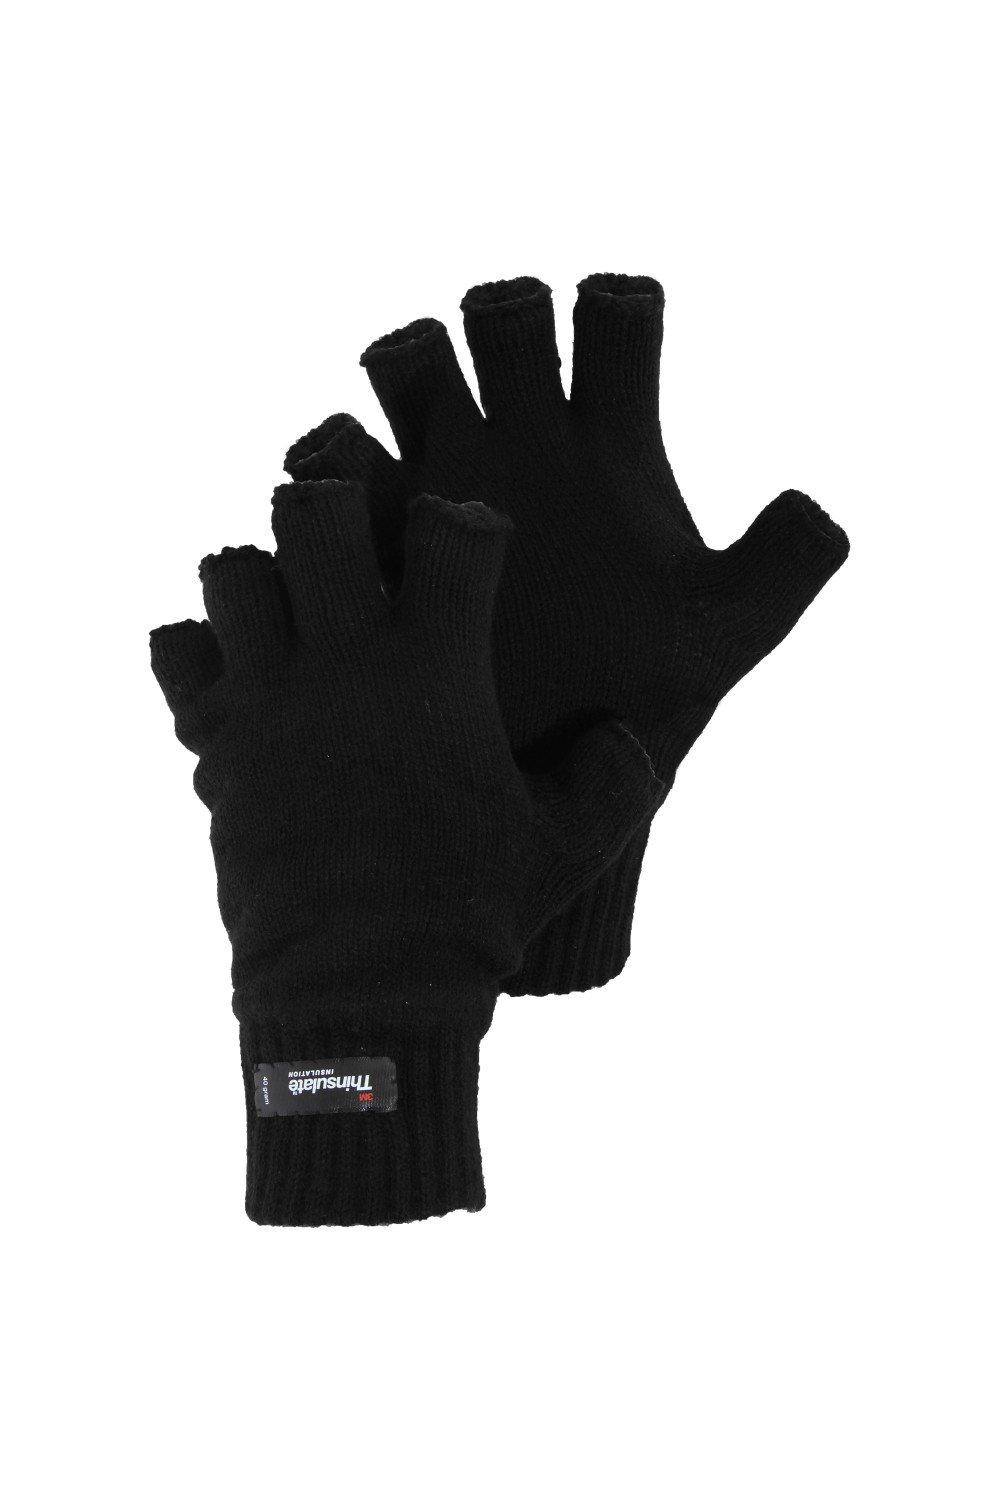 Вязаные зимние перчатки без пальцев Thinsulate Heatguard Universal Textiles, черный распродажа термовязаные зимние перчатки universal textiles черный